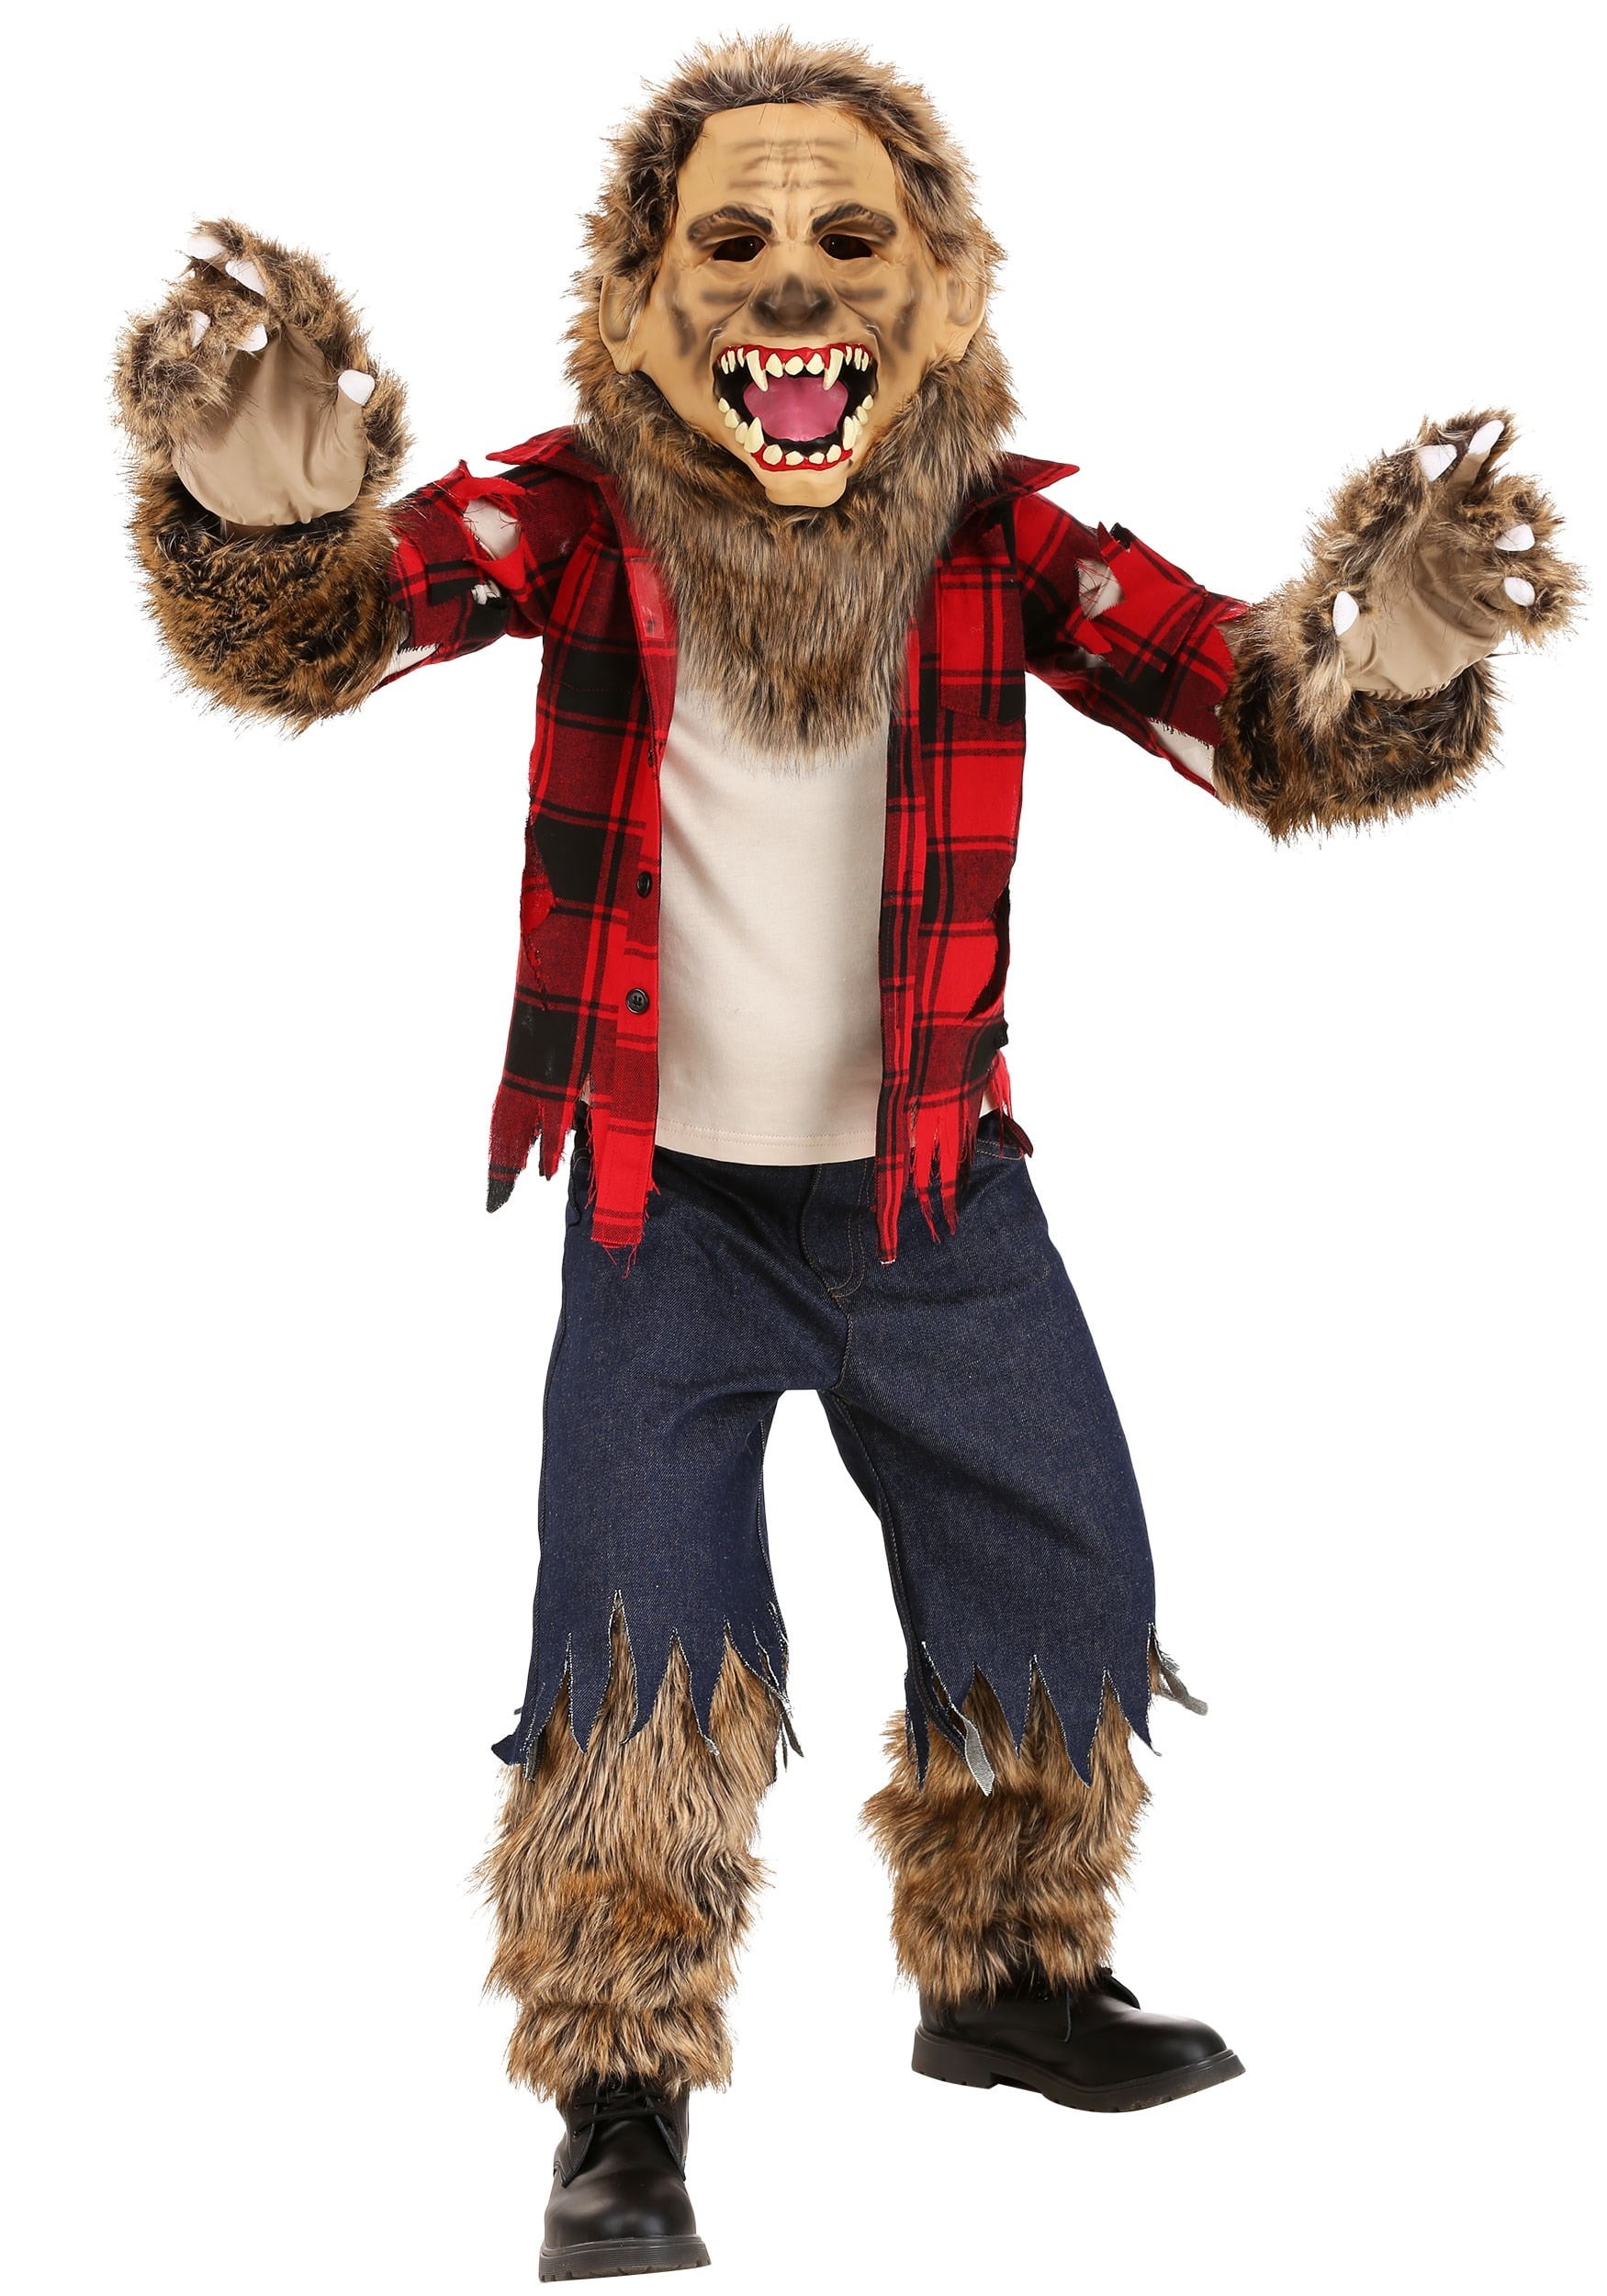 Werewolf Costume Toddler Fierce Werewolf Costume For Kids 18 Month ...